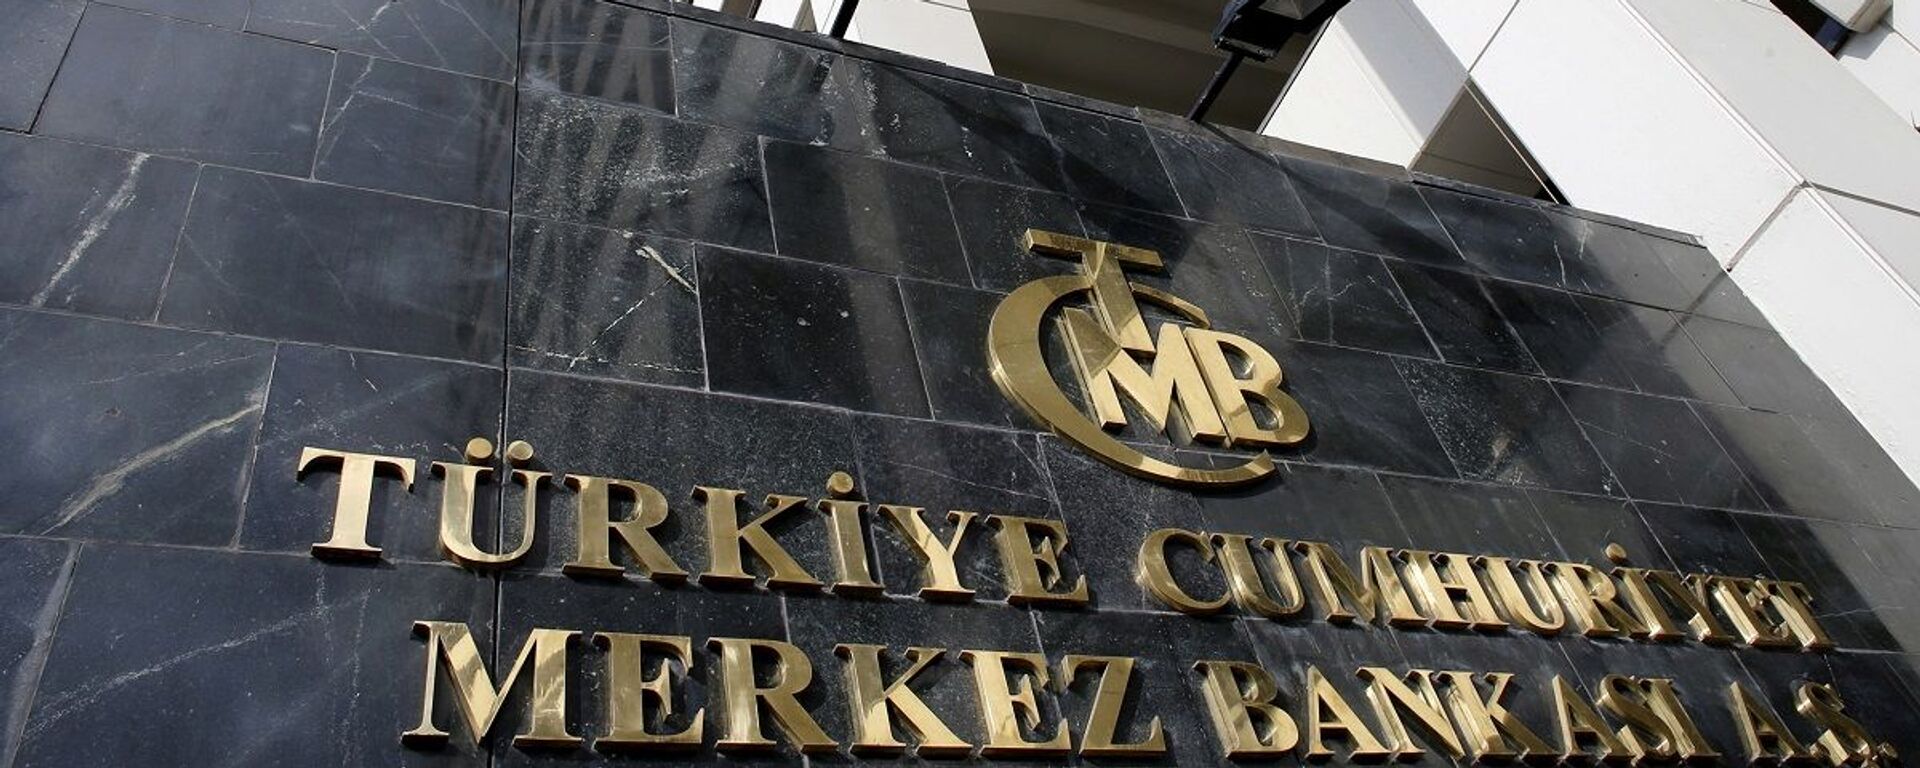 Merkez Bankası - Sputnik Türkiye, 1920, 29.07.2021